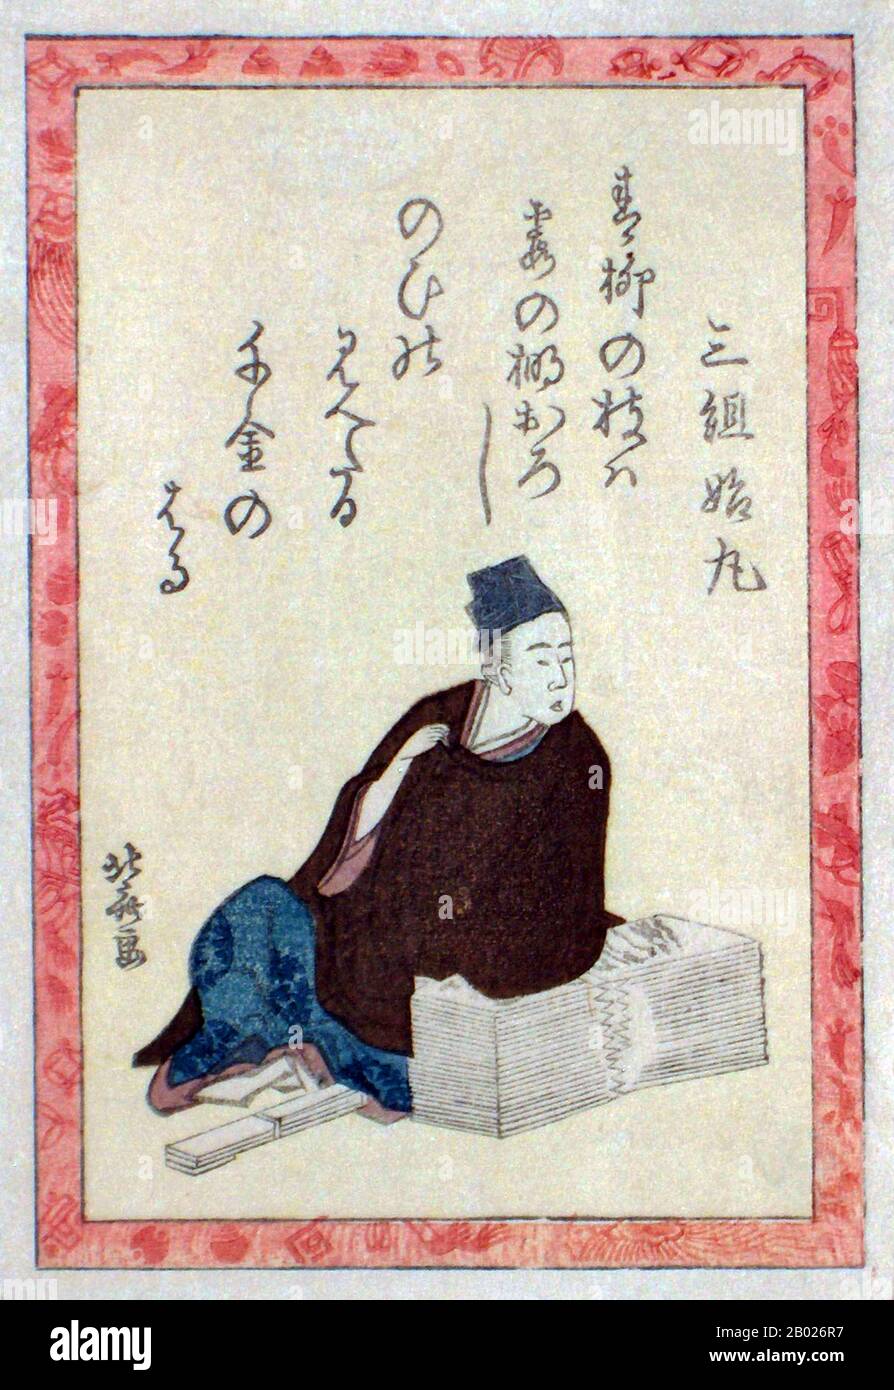 Katsushika Hokusai (葛飾 北斎, 31. Oktober 1760 - 10. Mai 1849) war ein japanischer Künstler, Ukiyo-e-Maler und Druckereimacher der Edo-Zeit. Er wurde von Malern wie Sesshu und anderen Stilen der chinesischen Malerei beeinflusst. Hokusai wurde in Edo (heute Tokio) geboren und ist am bekanntesten als Autor der Holzschnittdruckserie Sechsunddreißig Ansichten des Fuji (富嶽三十六景 Fugaku Sanjūroku-kei, c Im Jahre 1820er Jahre entstand Die Große Welle vor Kanagawa, die den international anerkannten Druck umfasst. Surimono (摺物) sind ein Genre des japanischen Holzschnitts. Sie wurden privat für besondere Anlässe wie z. B. in Auftrag gegeben Stockfoto